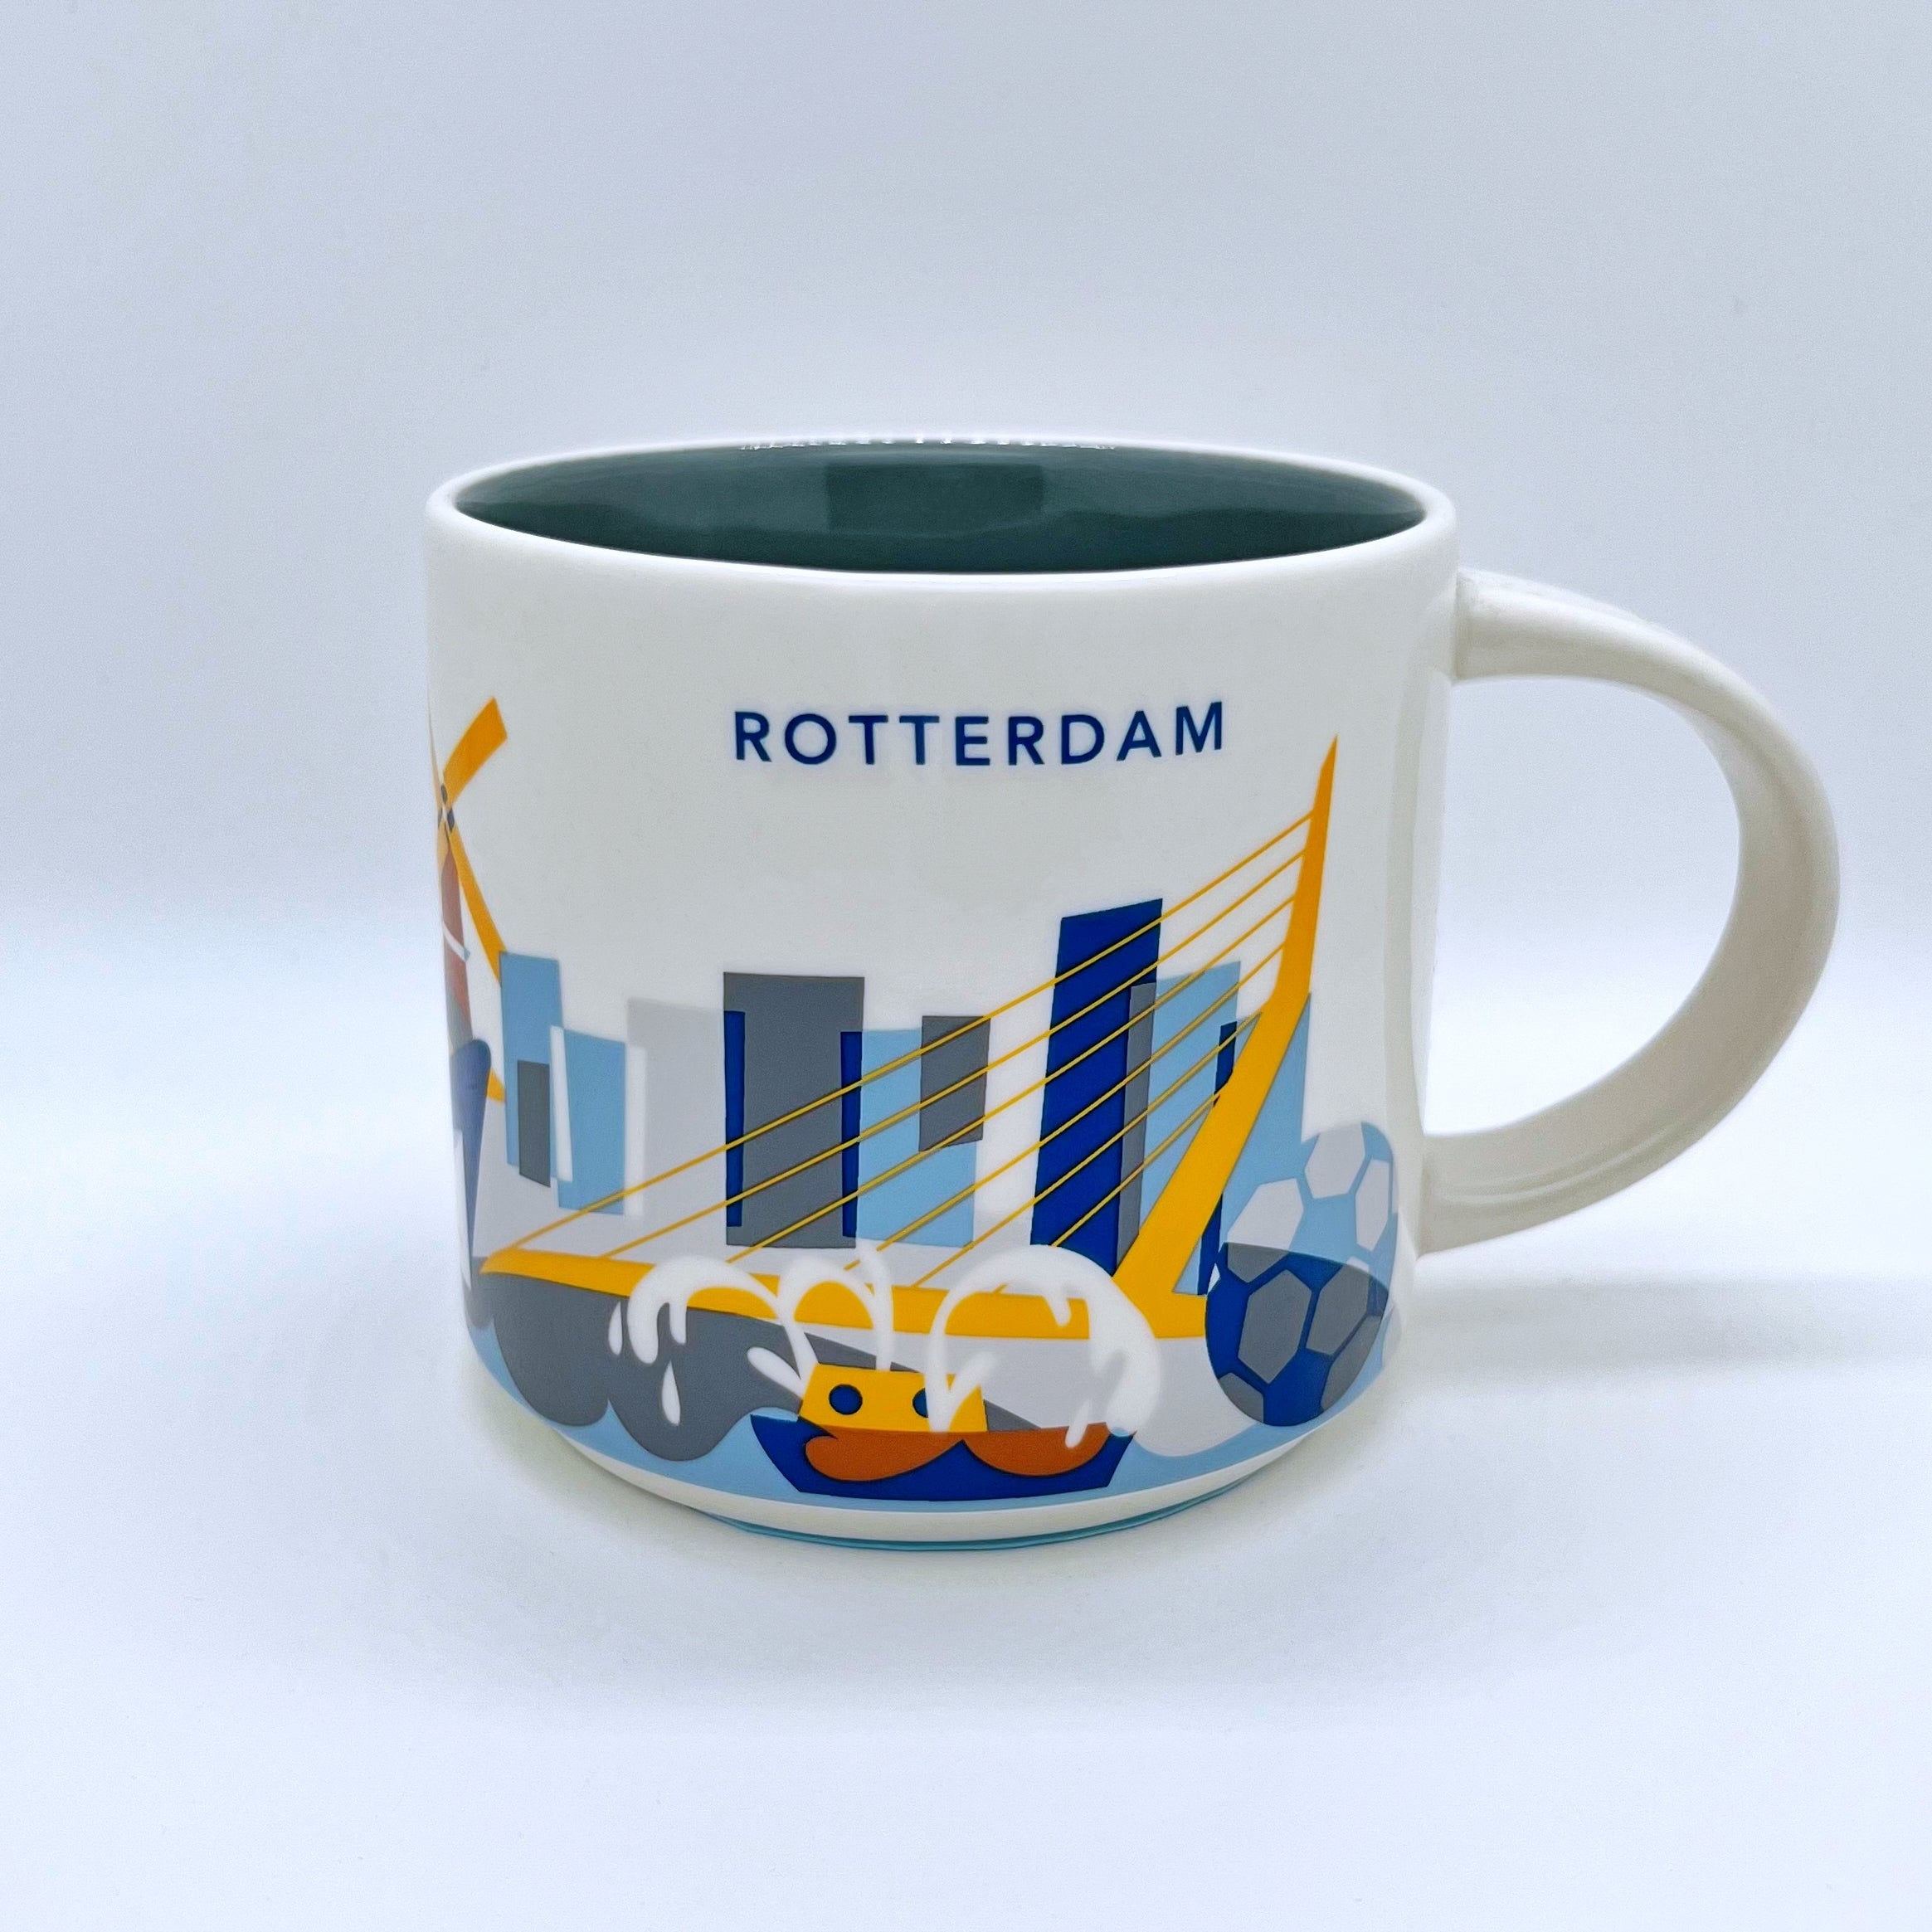 Kaffee Cappuccino oder Tee Tasse von Starbucks mit gemalten Bildern aus der Stadt Rotterdam